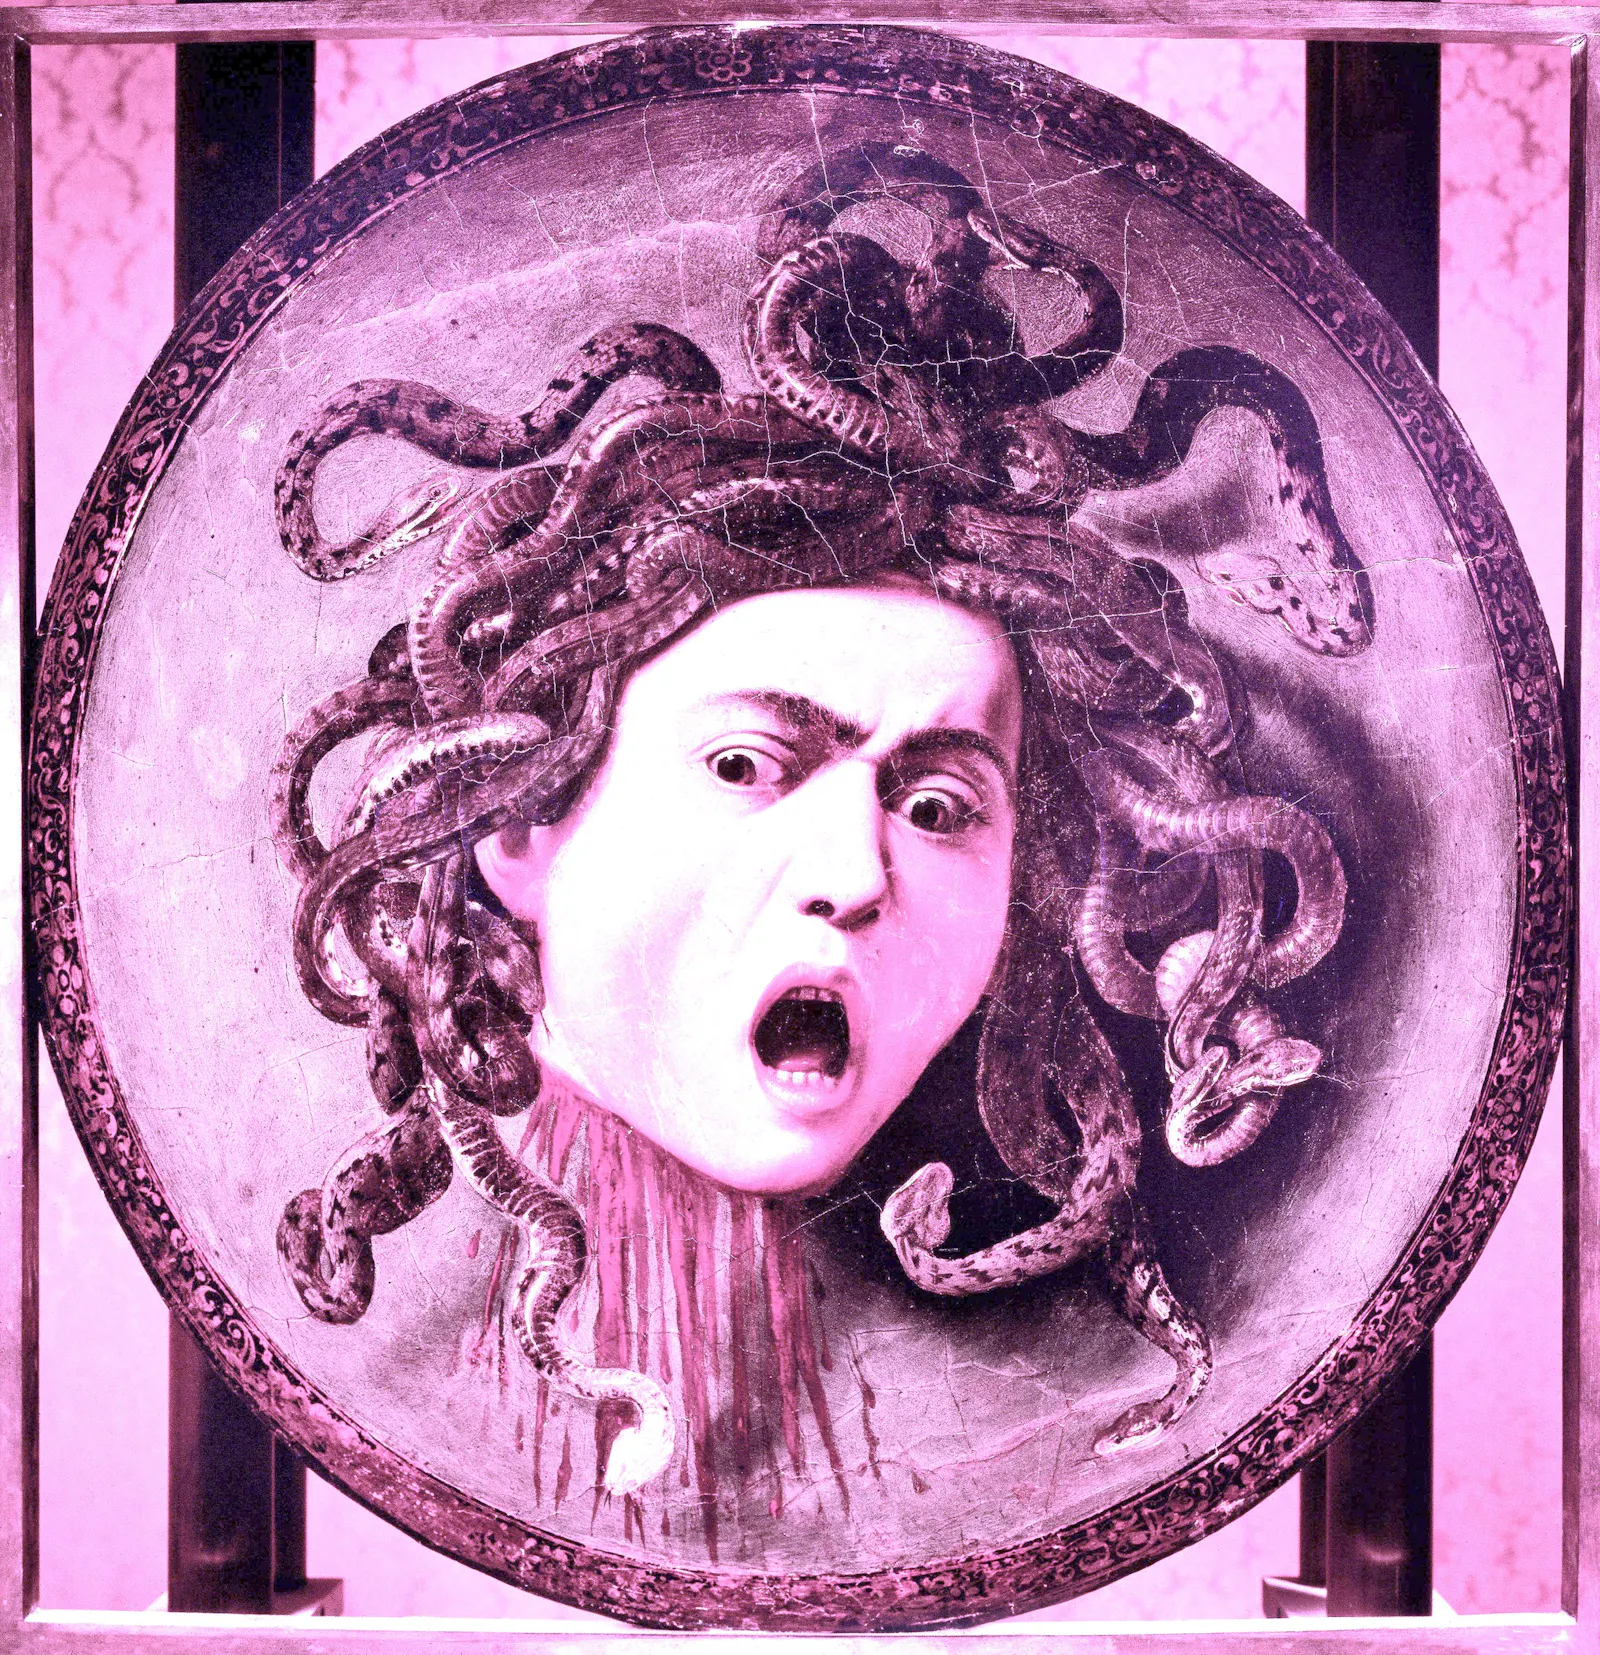 Medusa-Gemälde von Caravaggio, rosa eingefärbt